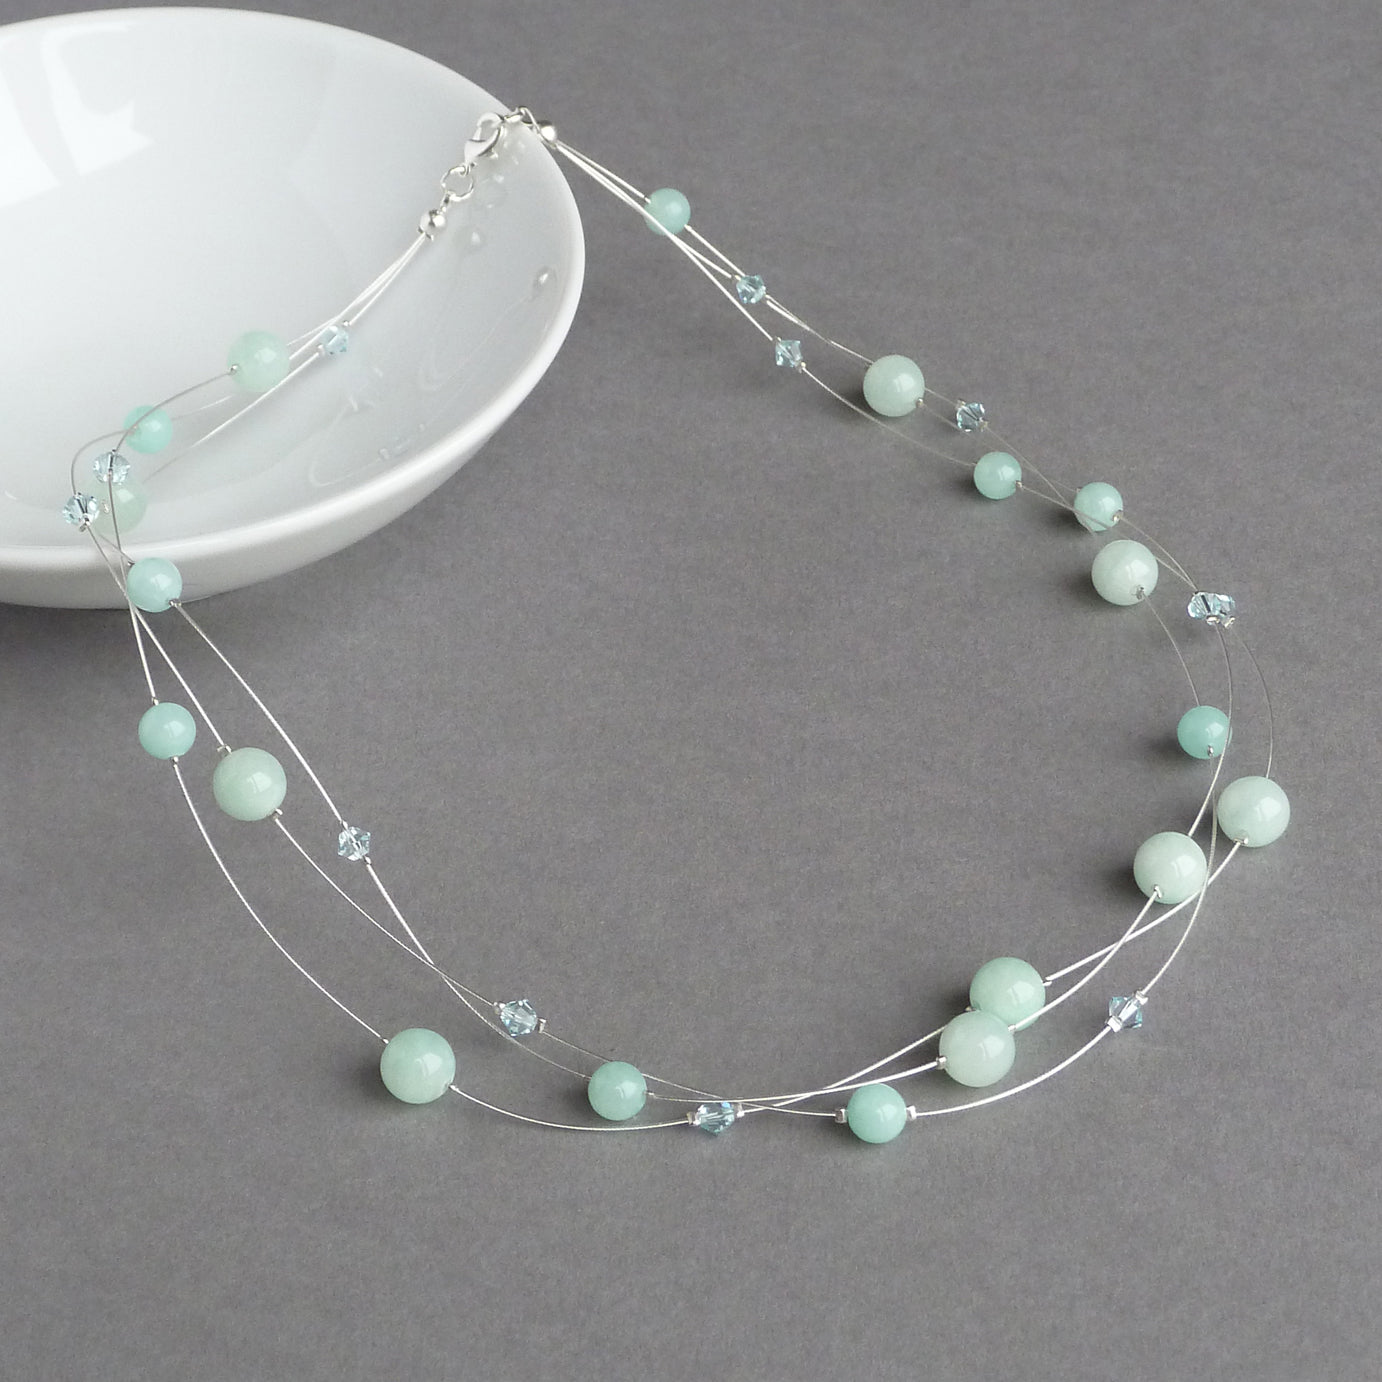 Aqua multi-strand necklace